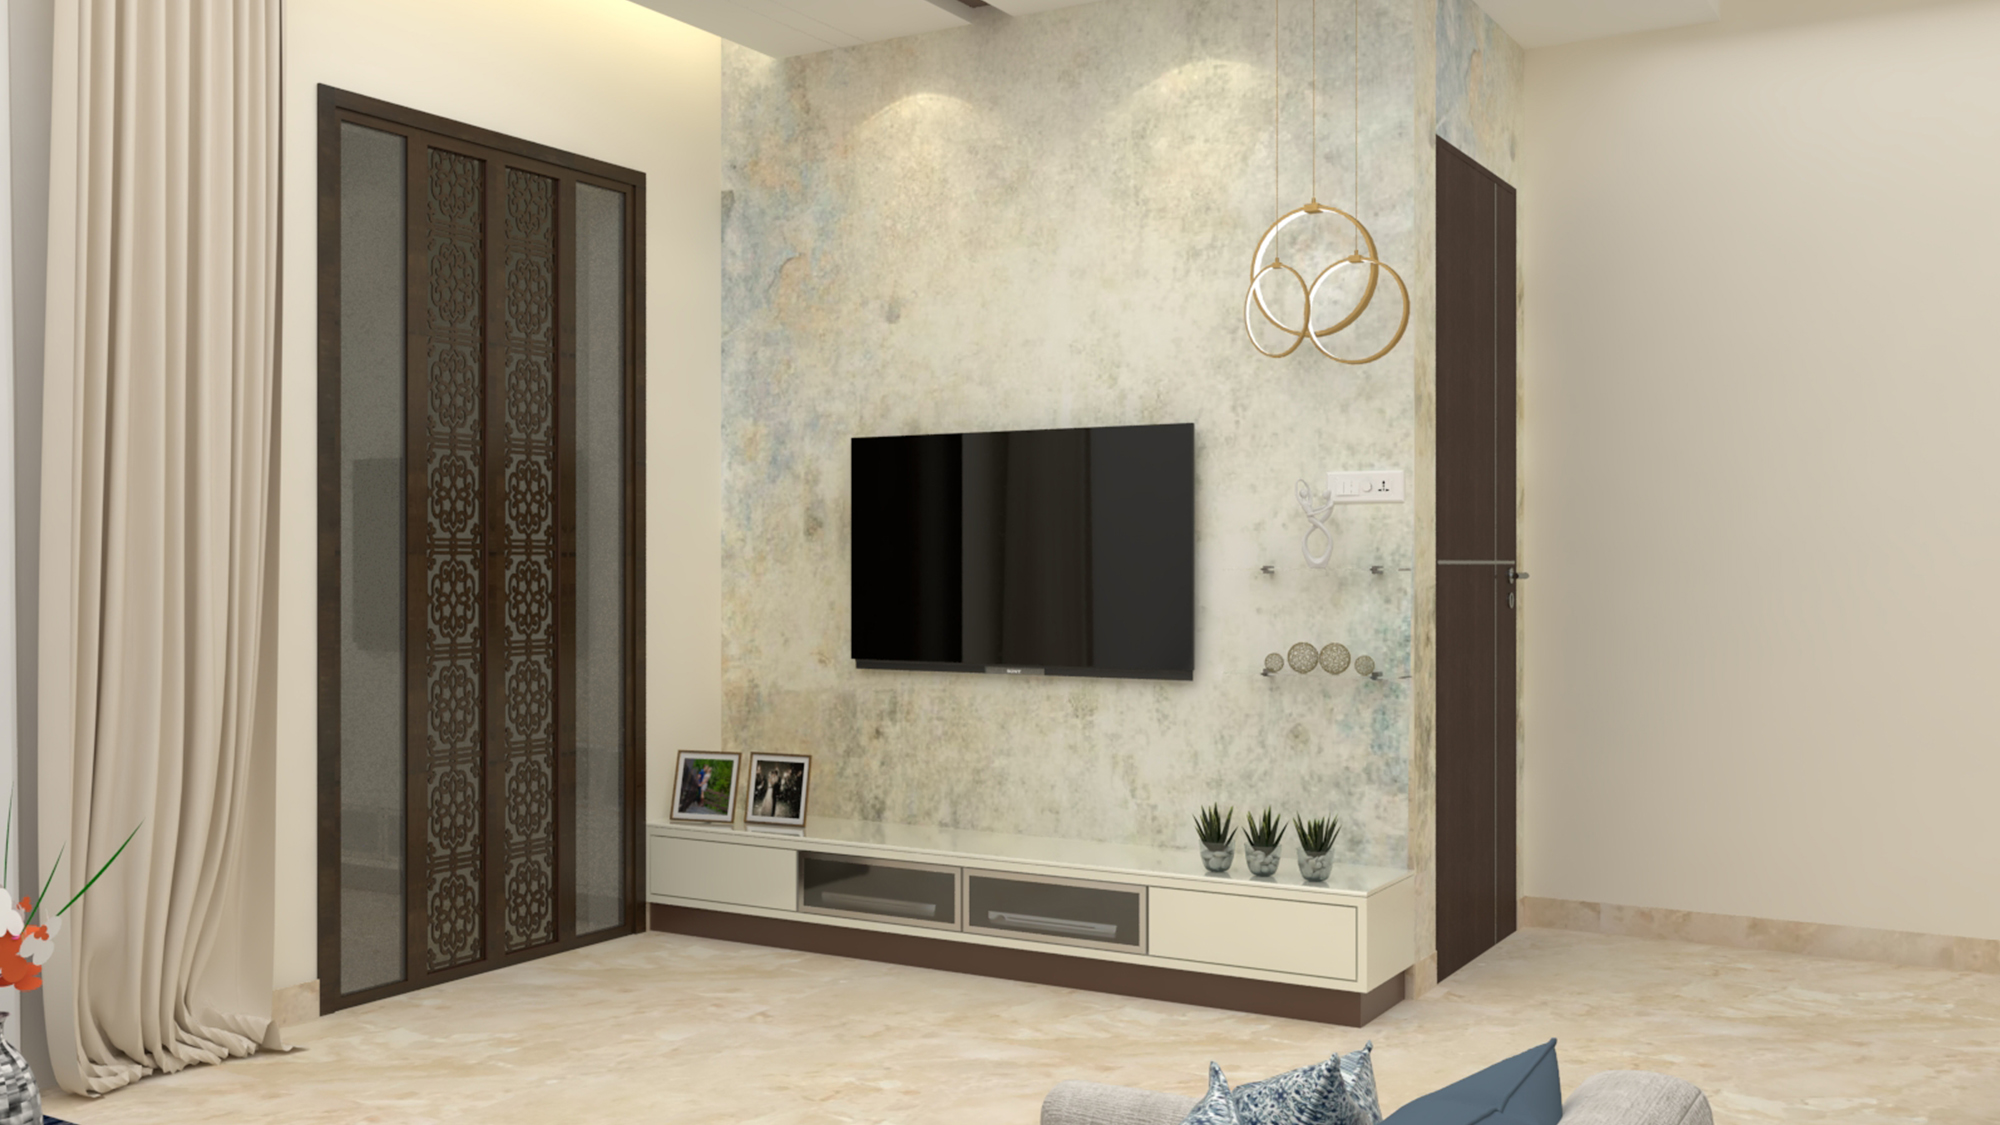 TV Unit Design - Domineer interior studio